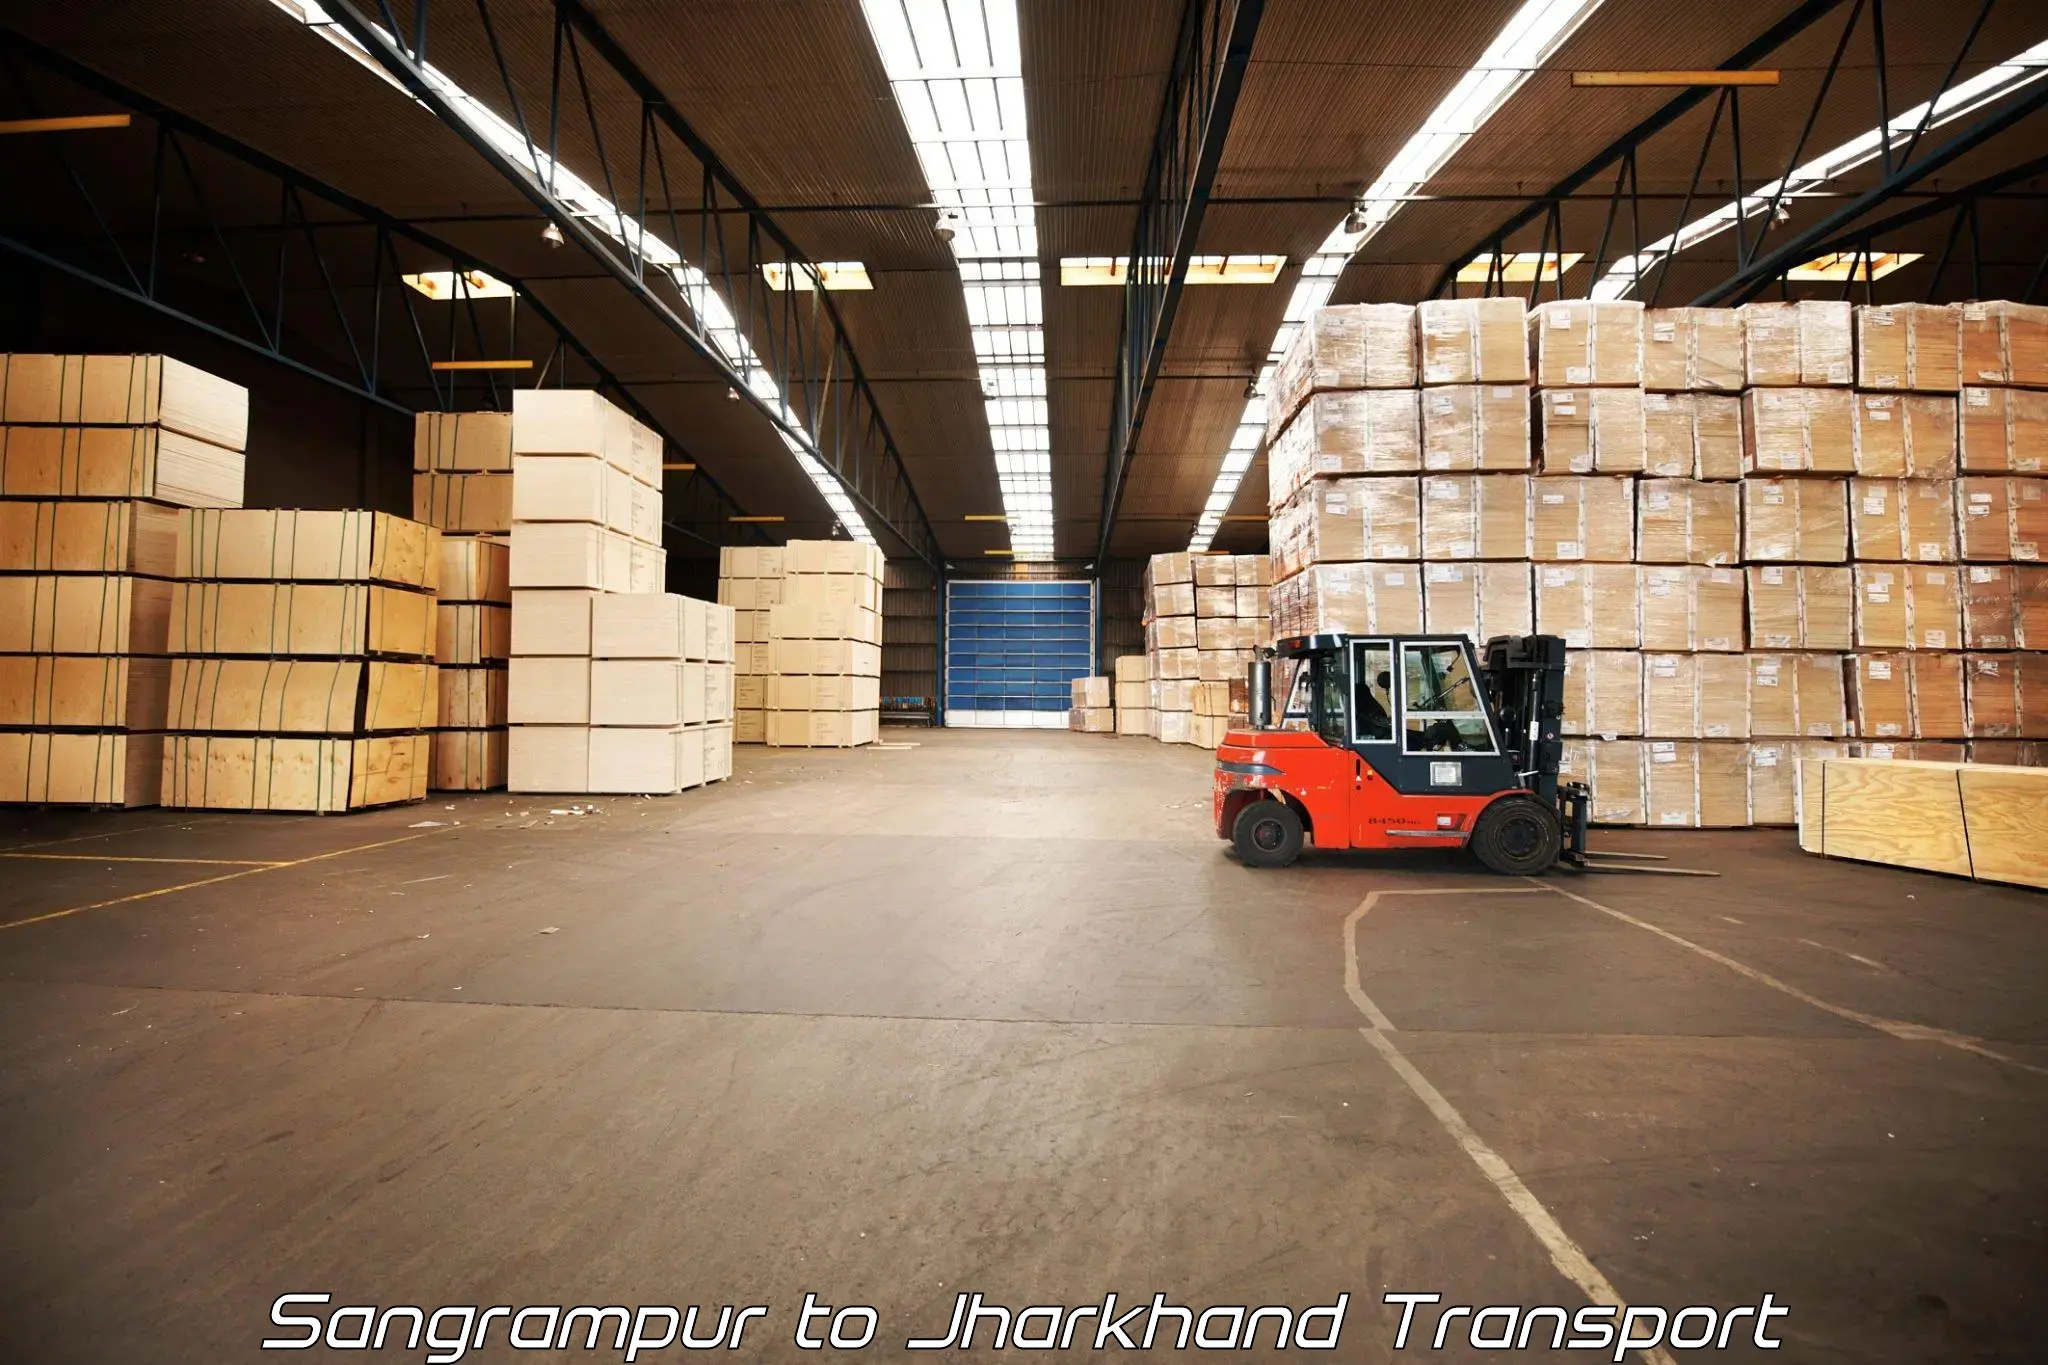 Commercial transport service Sangrampur to Medininagar